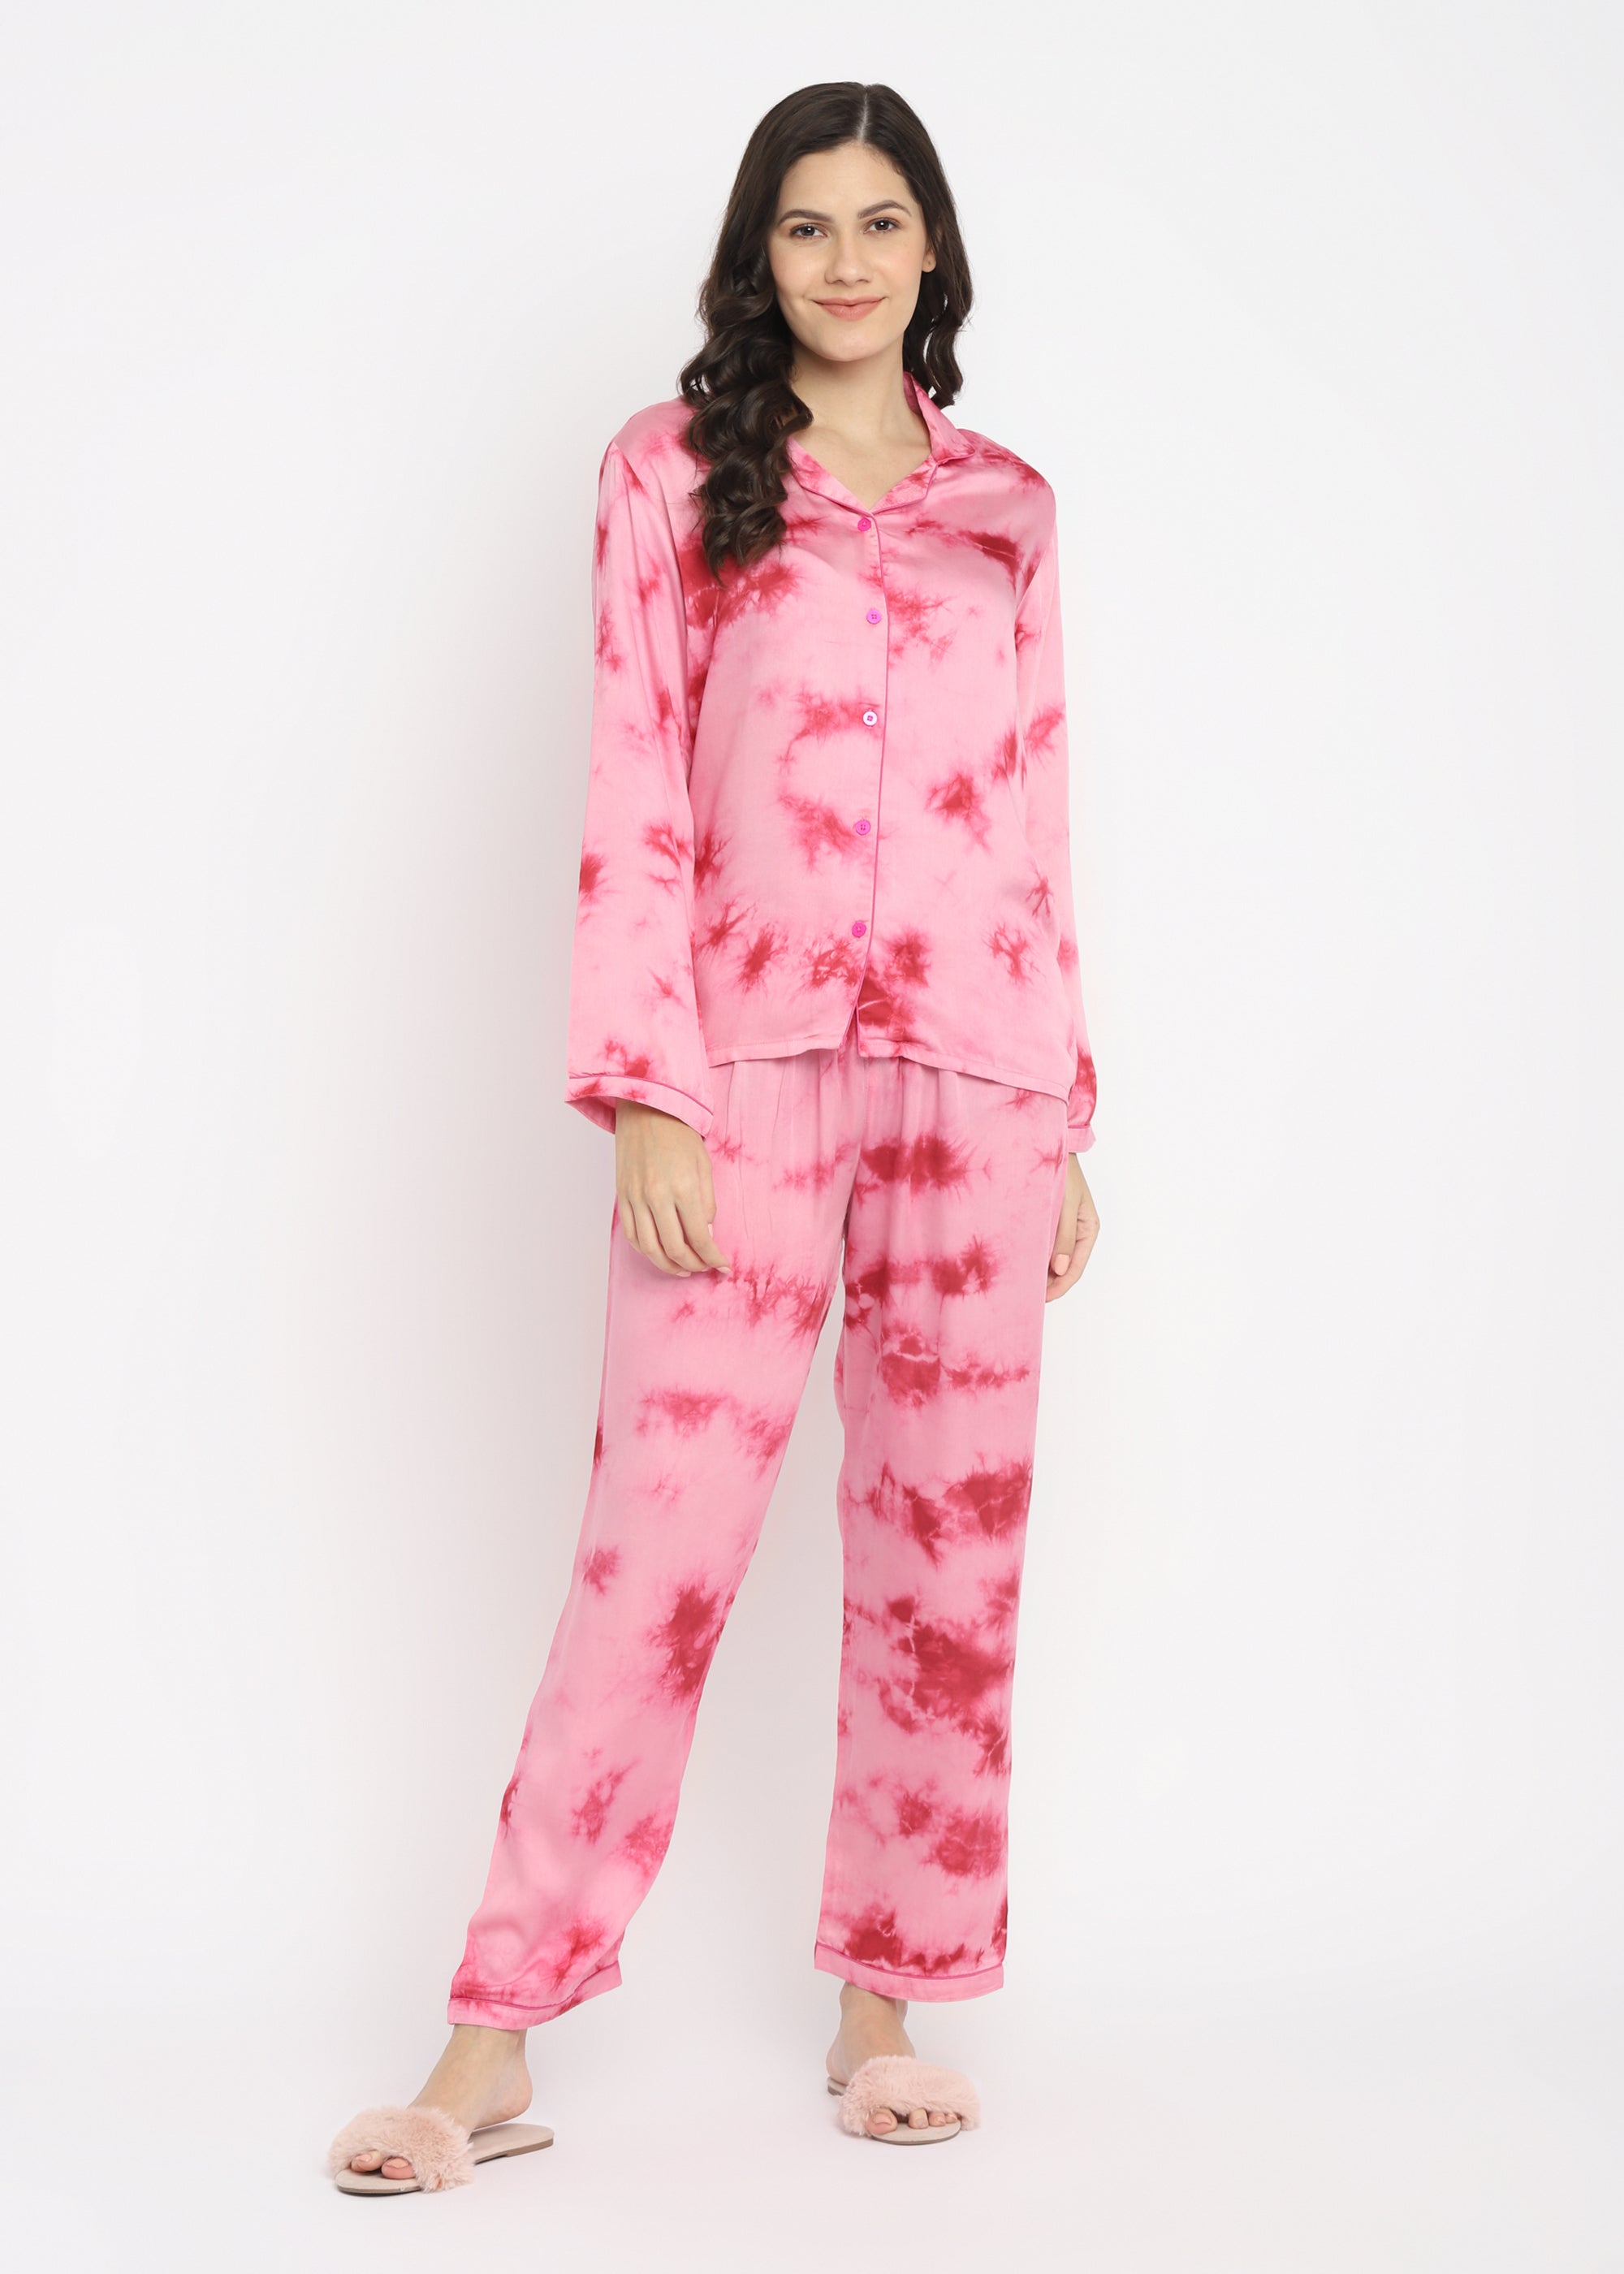 Ultra Soft Pink Tie-Dye Modal Satin Long Sleeve Women's Night Suit - Shopbloom